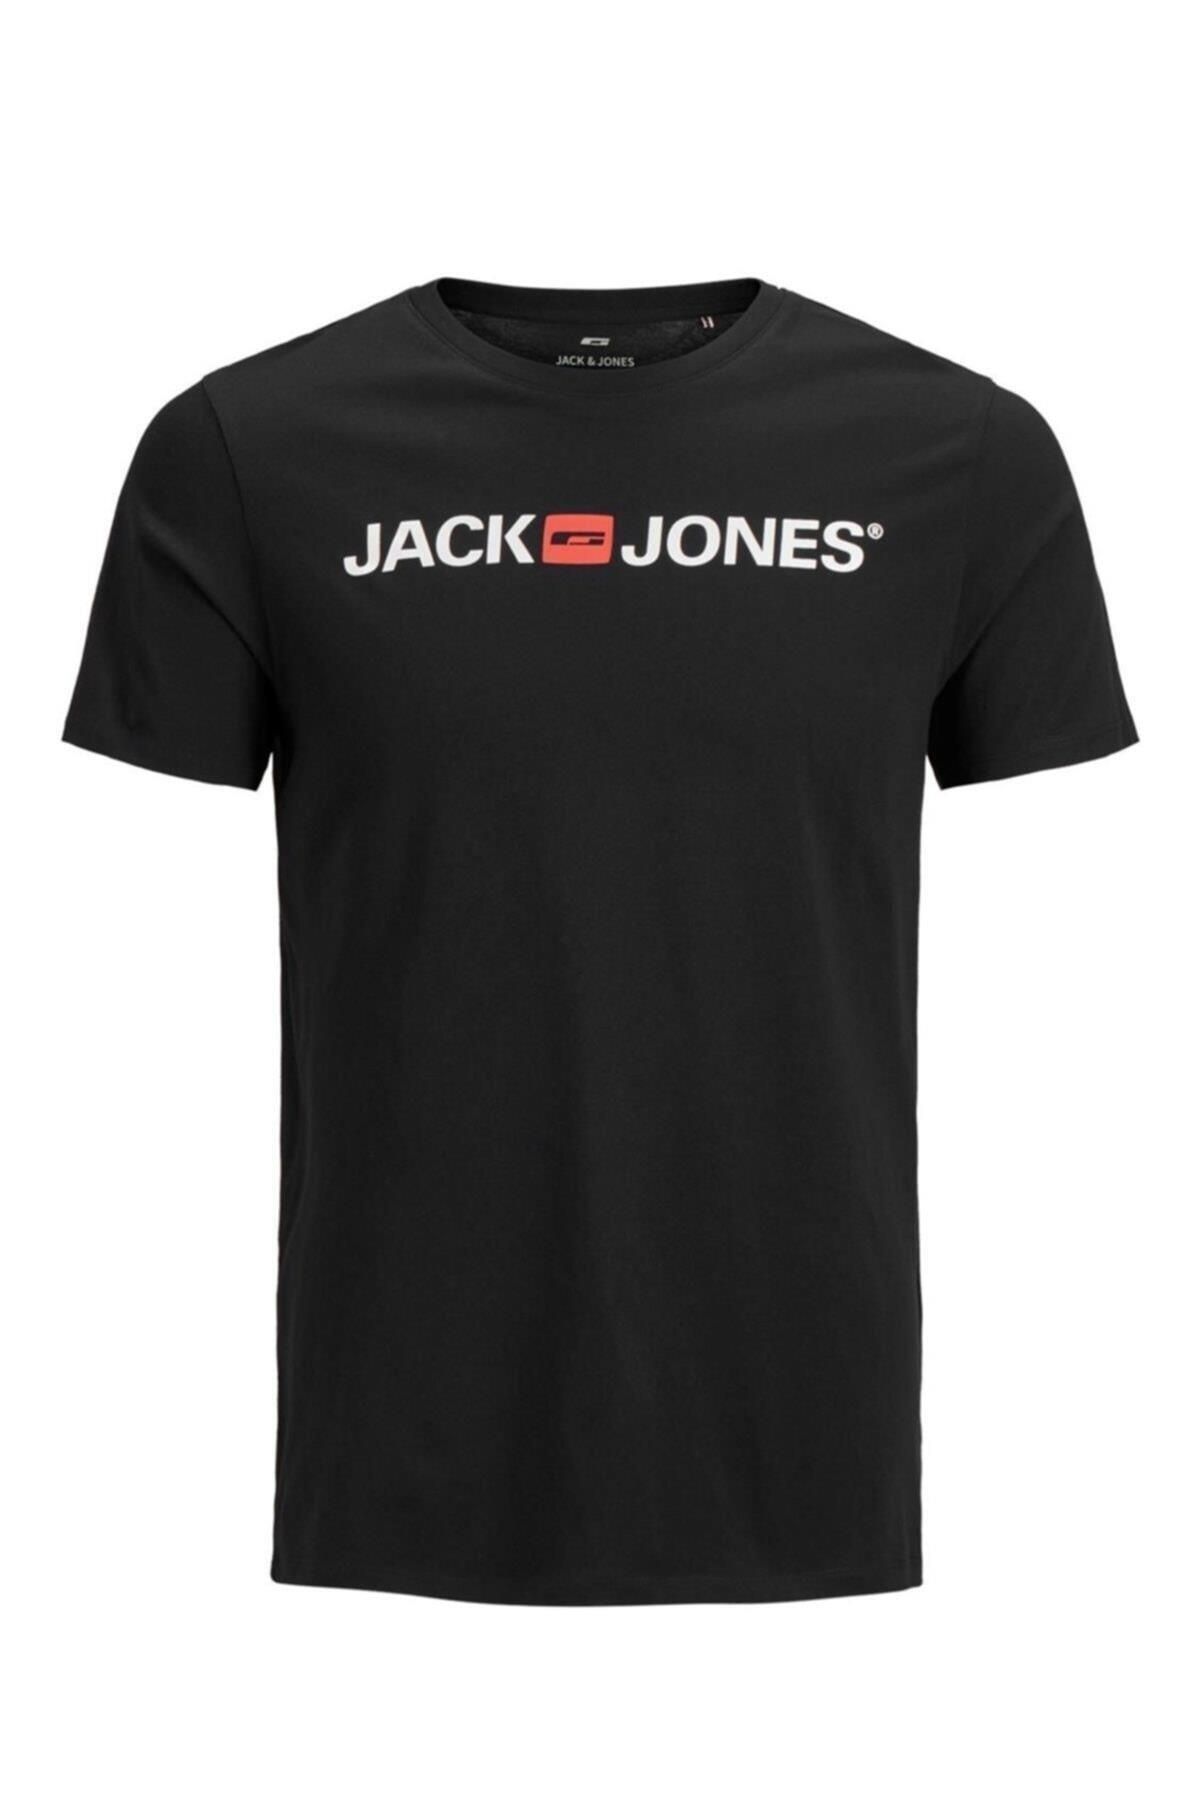 Jack & Jones Jack&jones 12137126 On Jack&jones Yazili 0 Yaka Kisa Kol Tsh